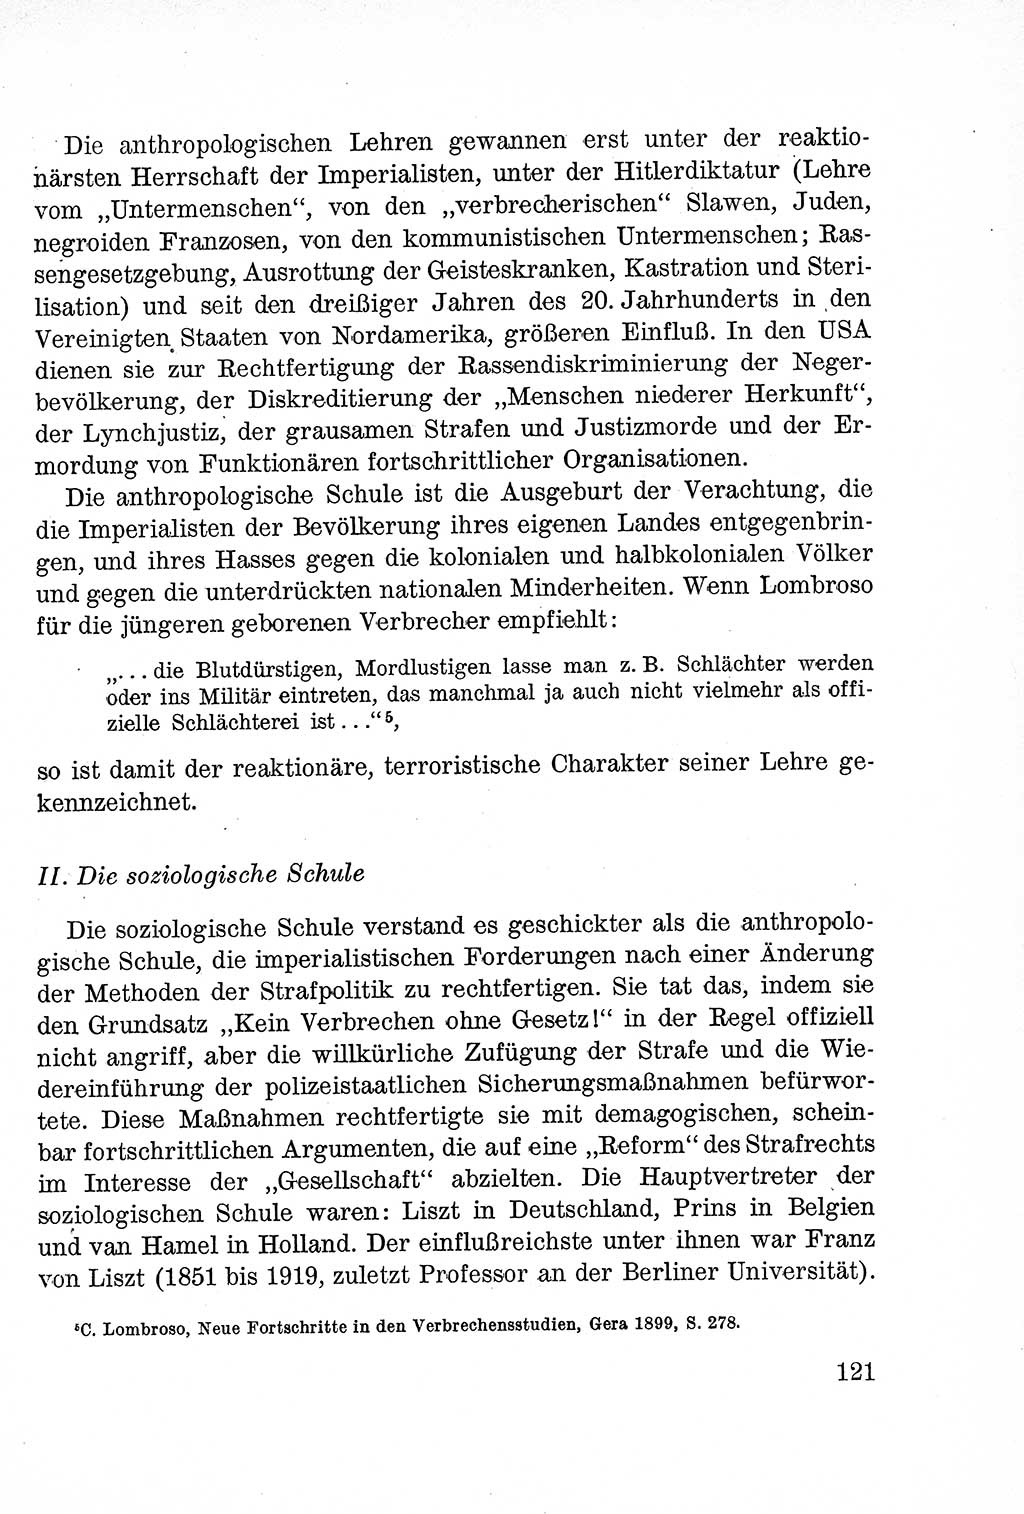 Lehrbuch des Strafrechts der Deutschen Demokratischen Republik (DDR), Allgemeiner Teil 1957, Seite 121 (Lb. Strafr. DDR AT 1957, S. 121)